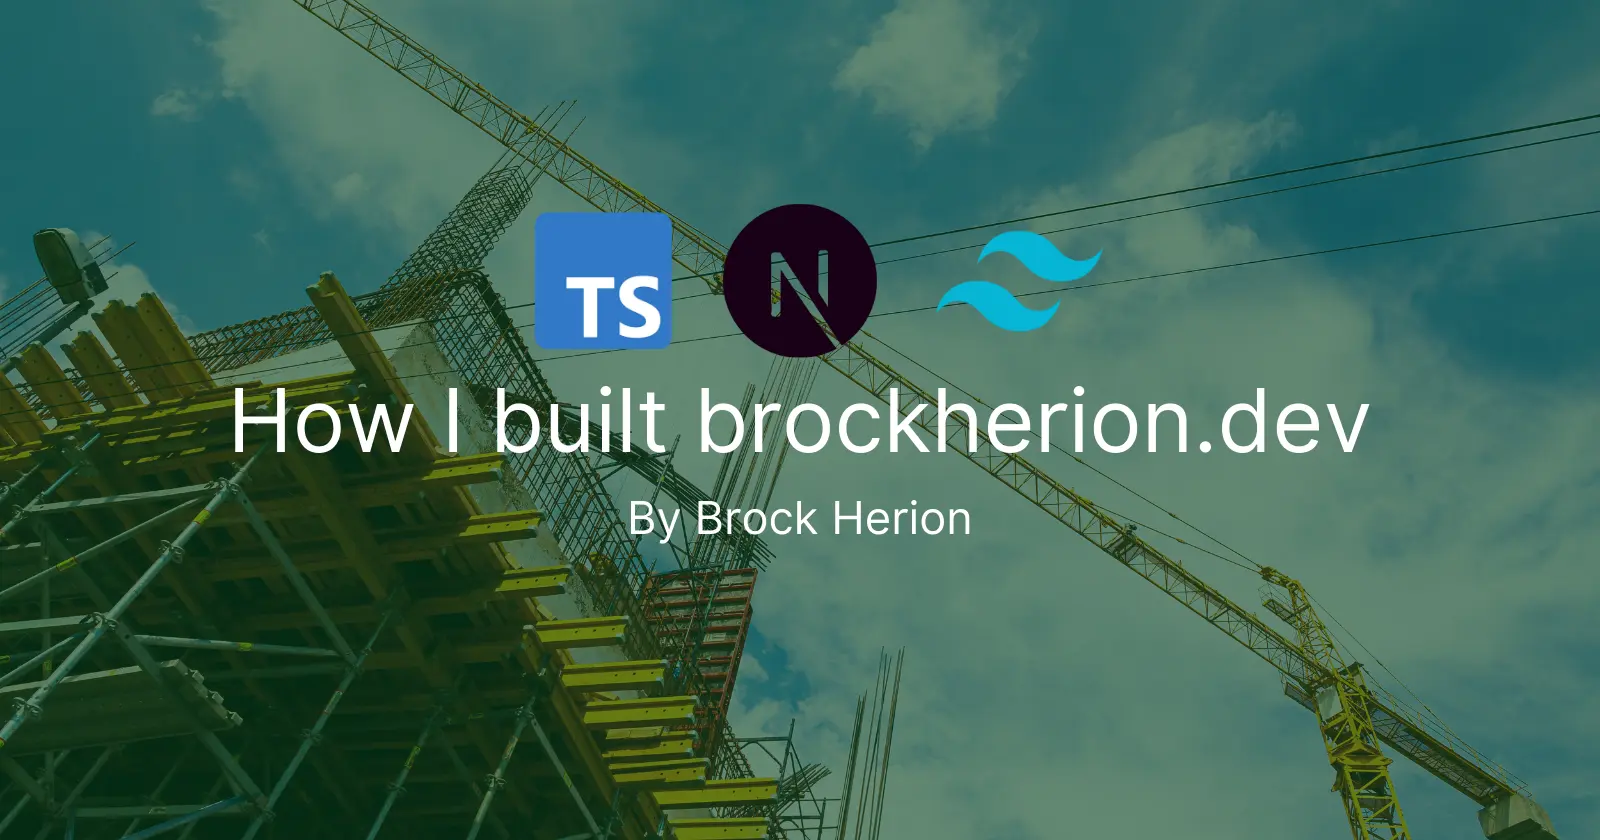 How I built brockherion.dev